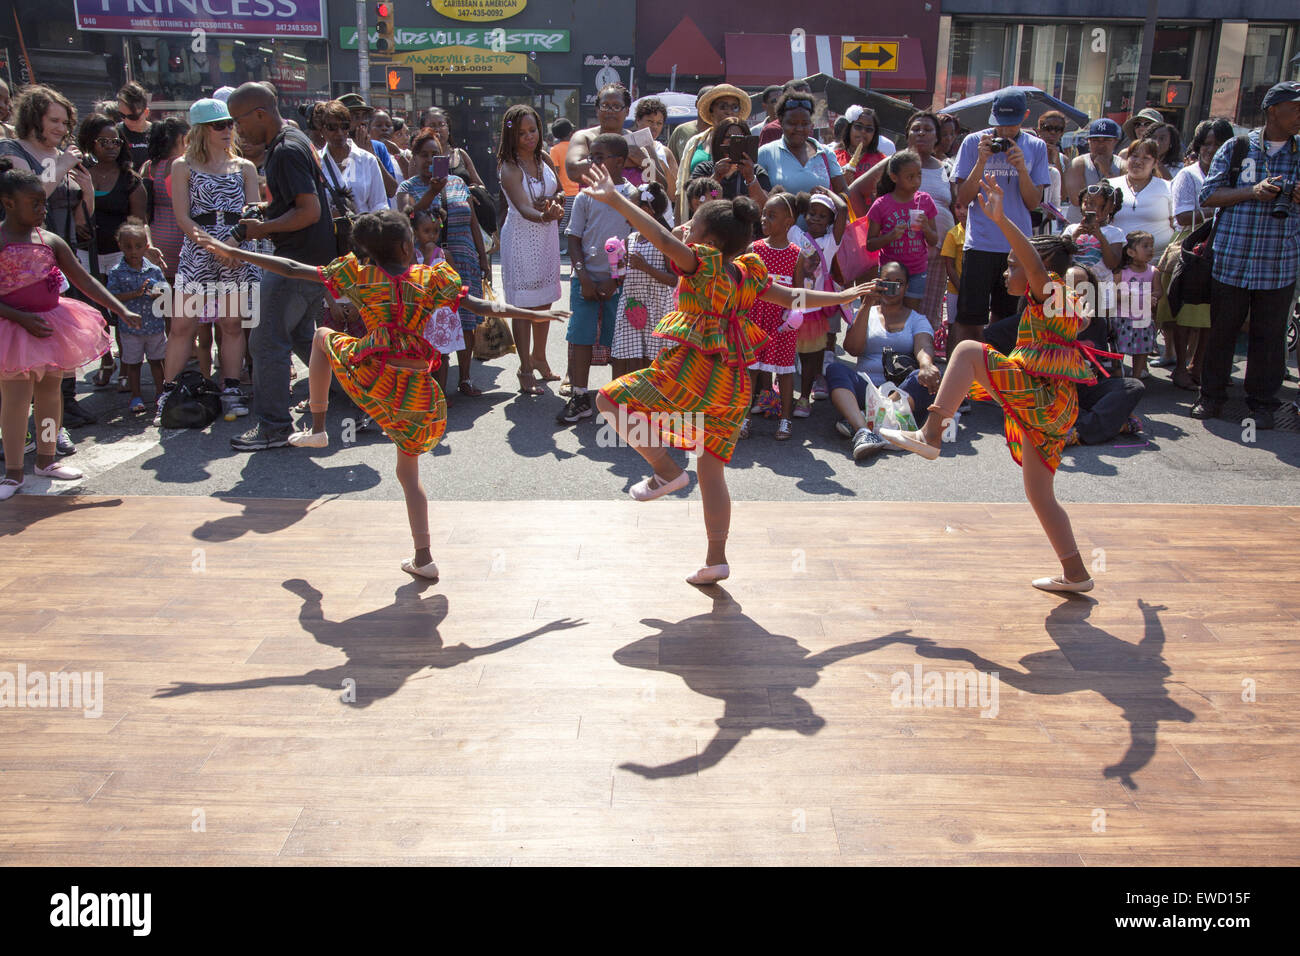 Junge Damen führen in die Flatbush Avenue Street Festival von einer lokalen Tanzschule in Brooklyn, New York. Stockfoto